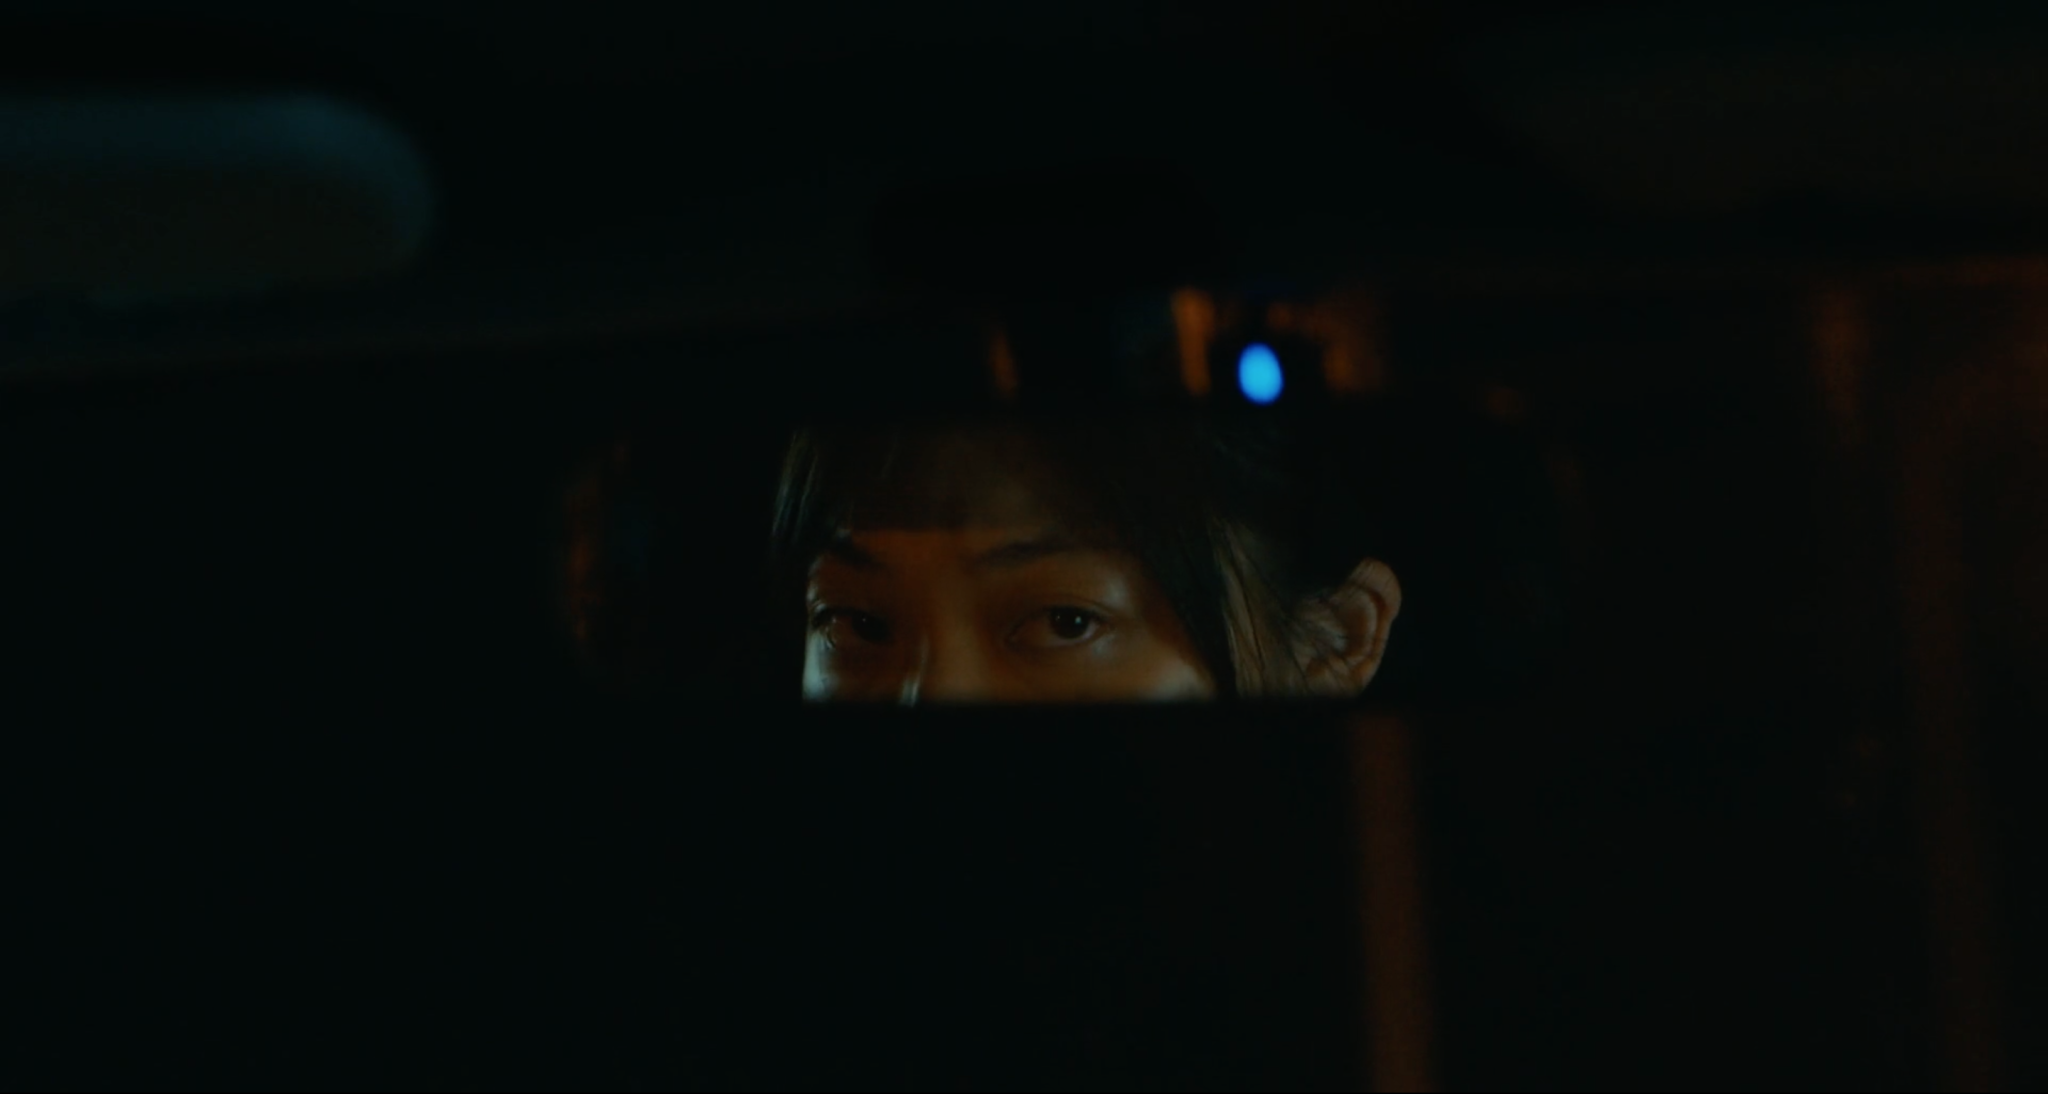 Cena do filme Drive My Car. Nela está o reflexo do olhar de Misaki pelo retrovisor. Misaki é uma jovem nipônica com cabelos pretos. O fundo do retrovisor é o céu da noite, completamente preto.